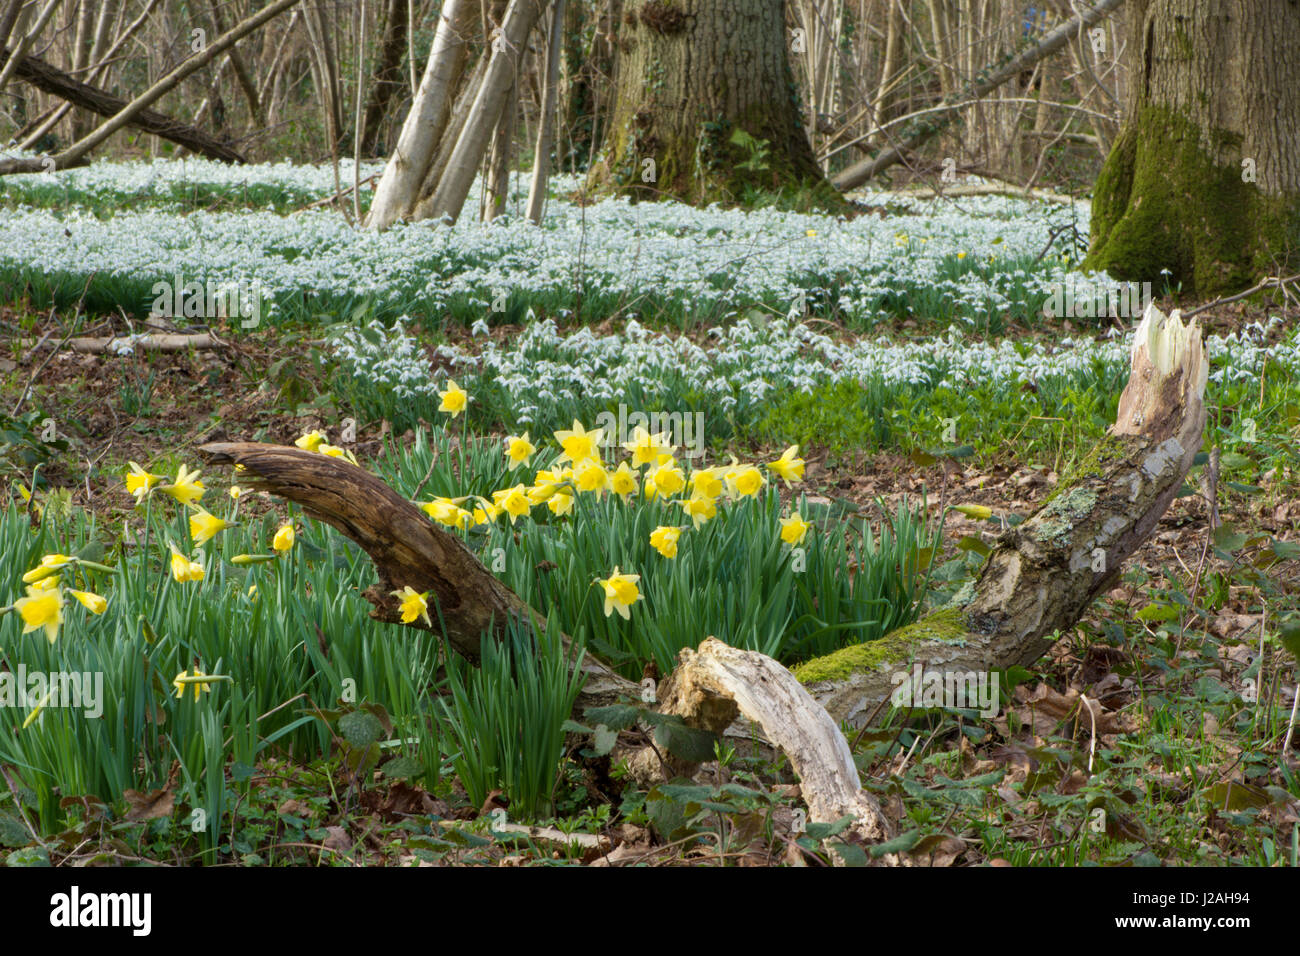 La JONQUILLE Narcissus pseudonarcissus sauvages, et perce-neige, Galanthus nivalis, en forêt mixte, Sussex, UK. Février Banque D'Images